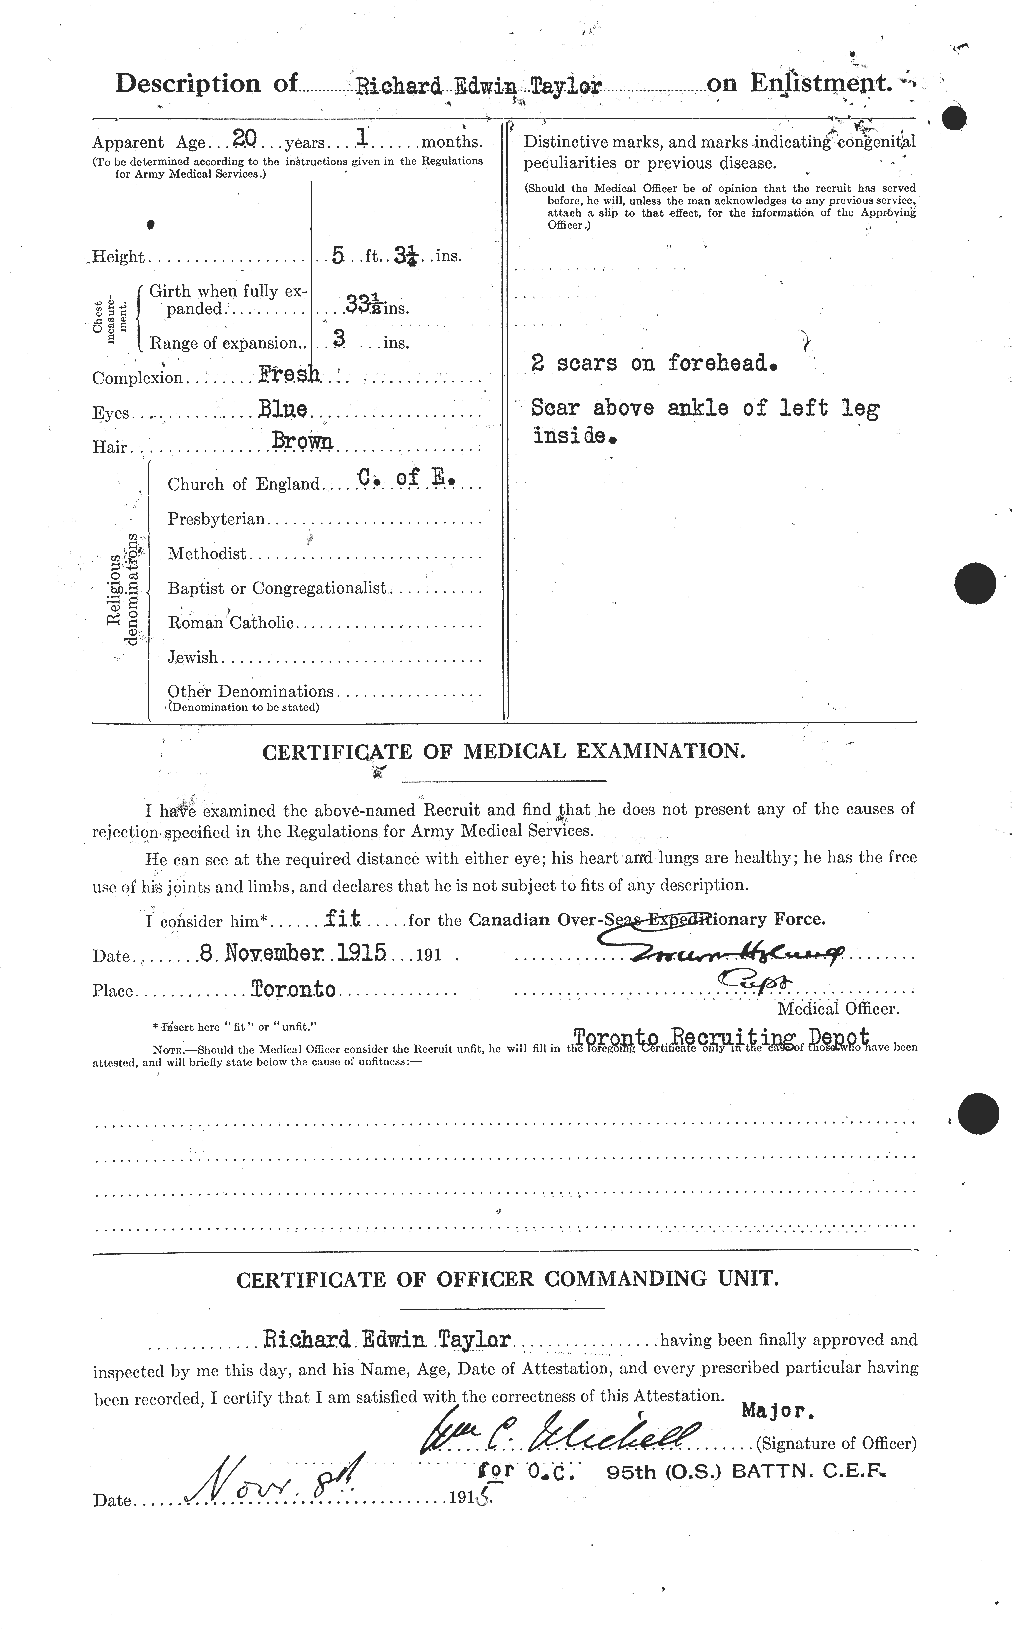 Dossiers du Personnel de la Première Guerre mondiale - CEC 627825b